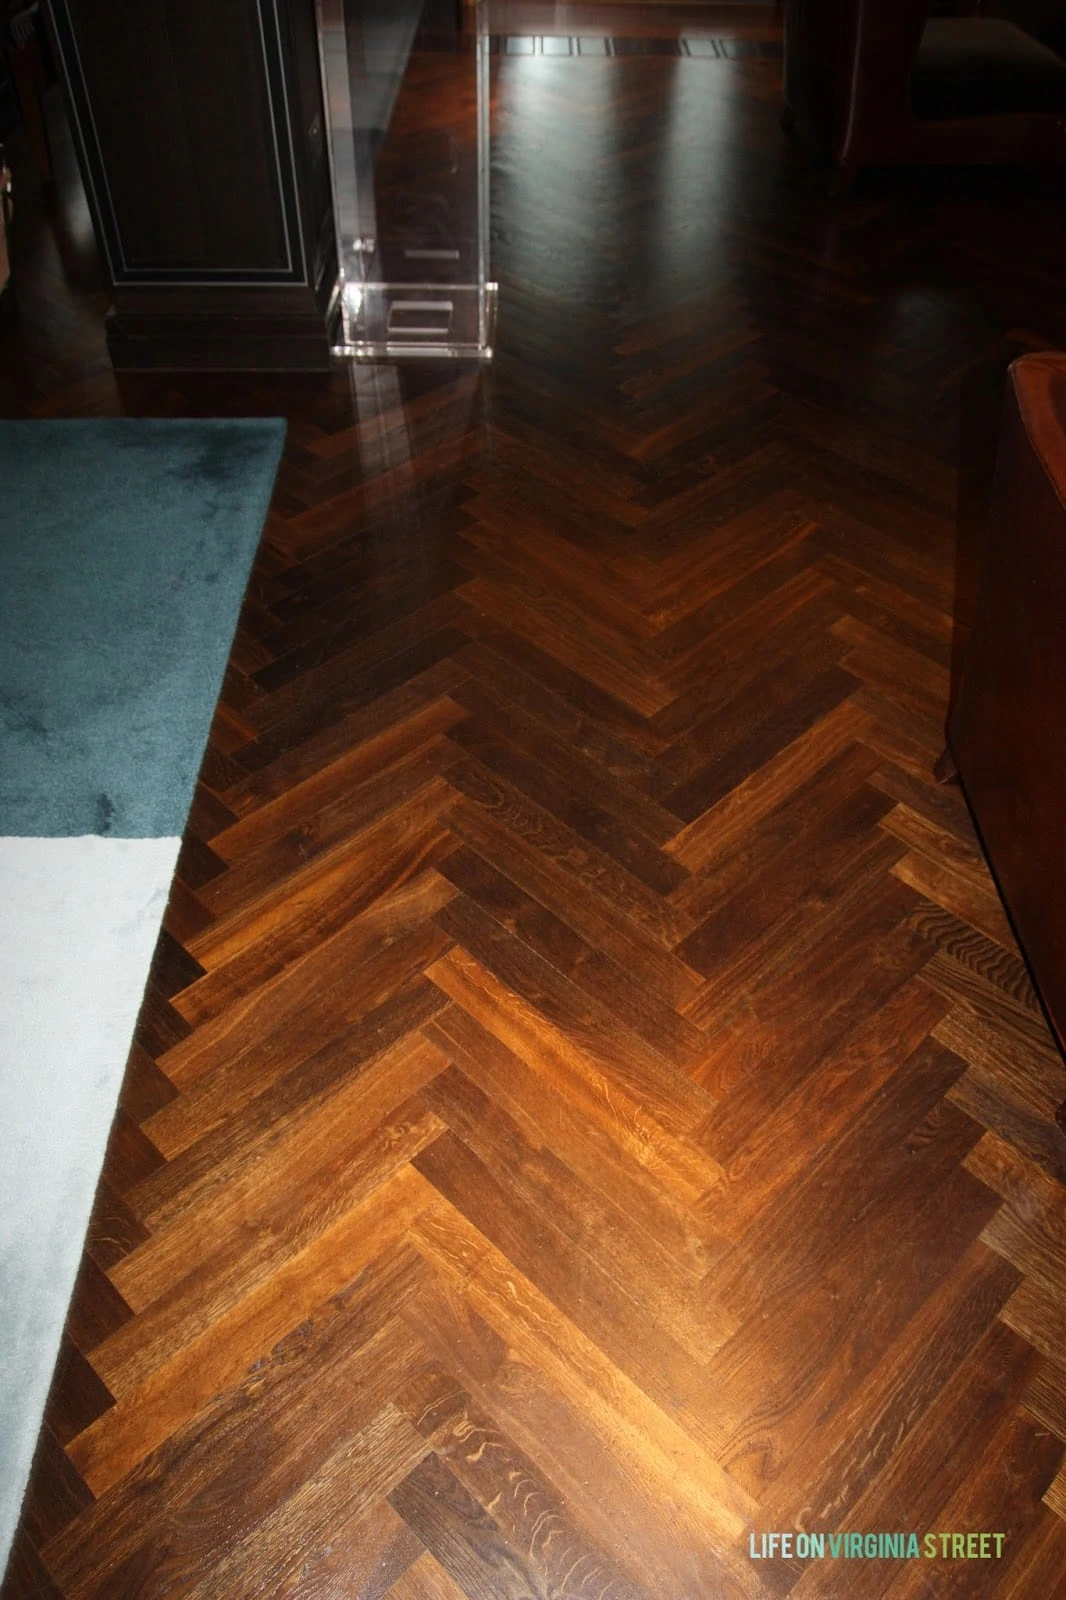 A dark hardwood floor picture in Europe.